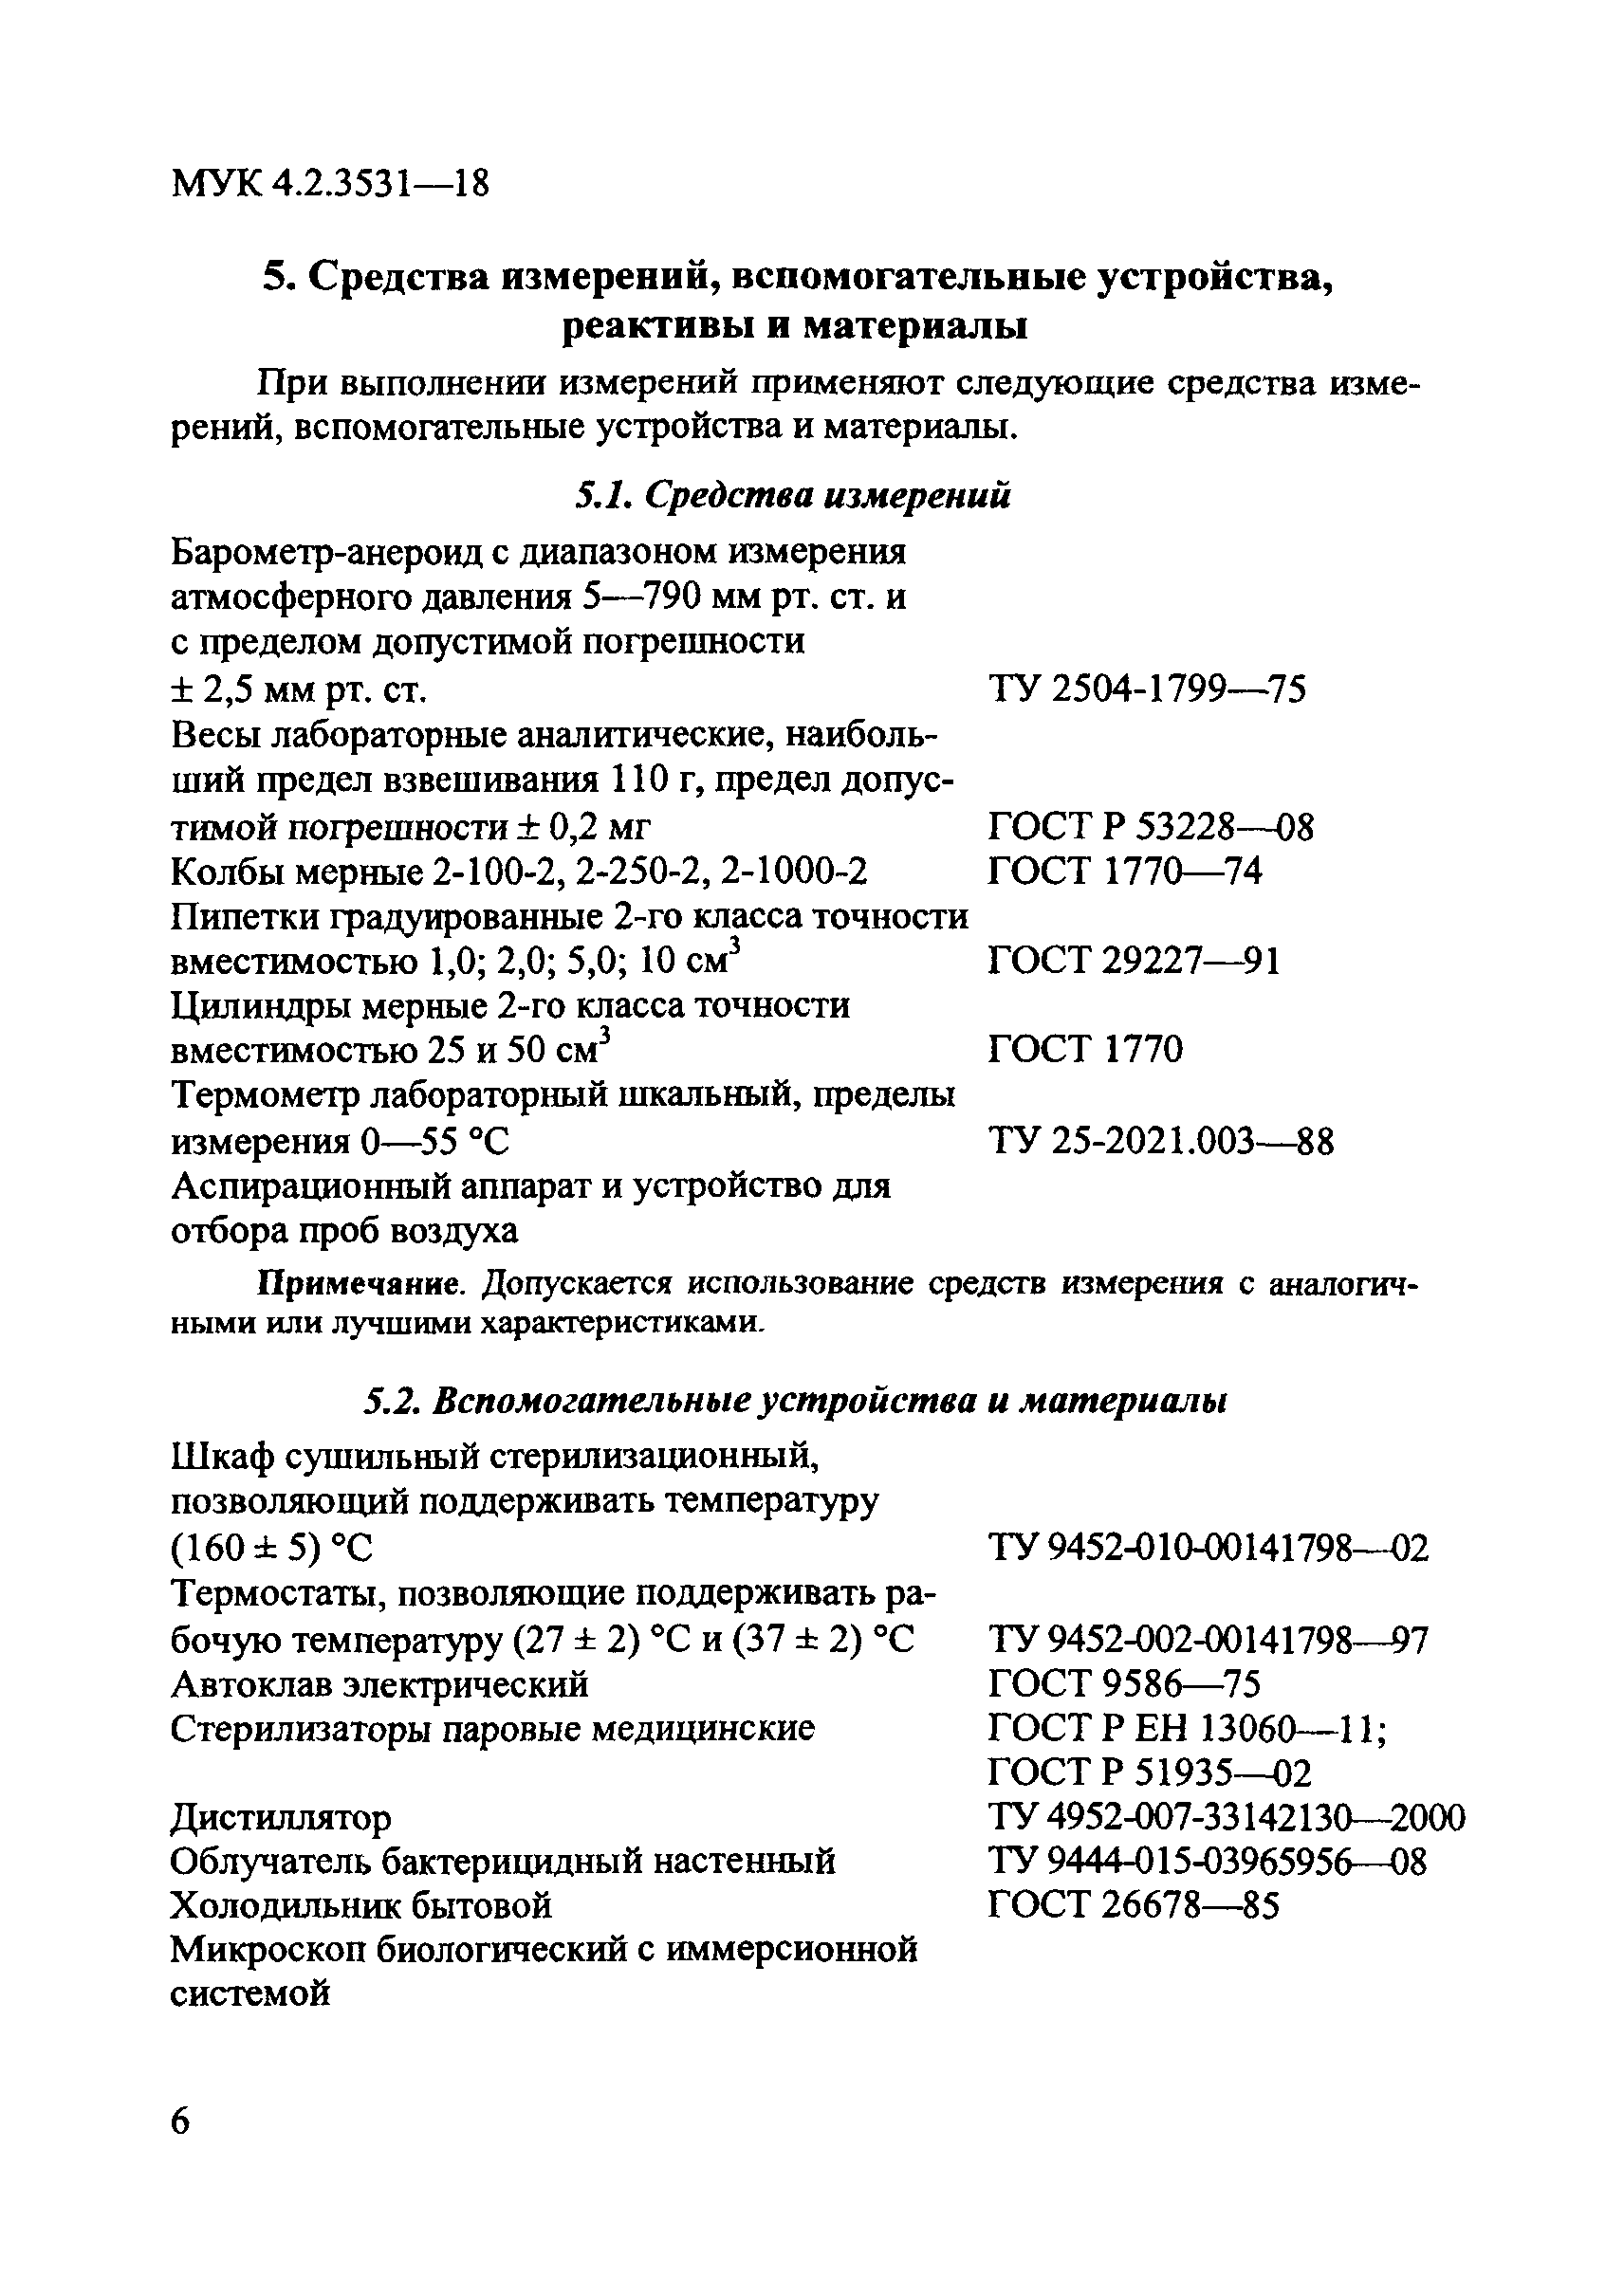 МУК 4.2.3531-18